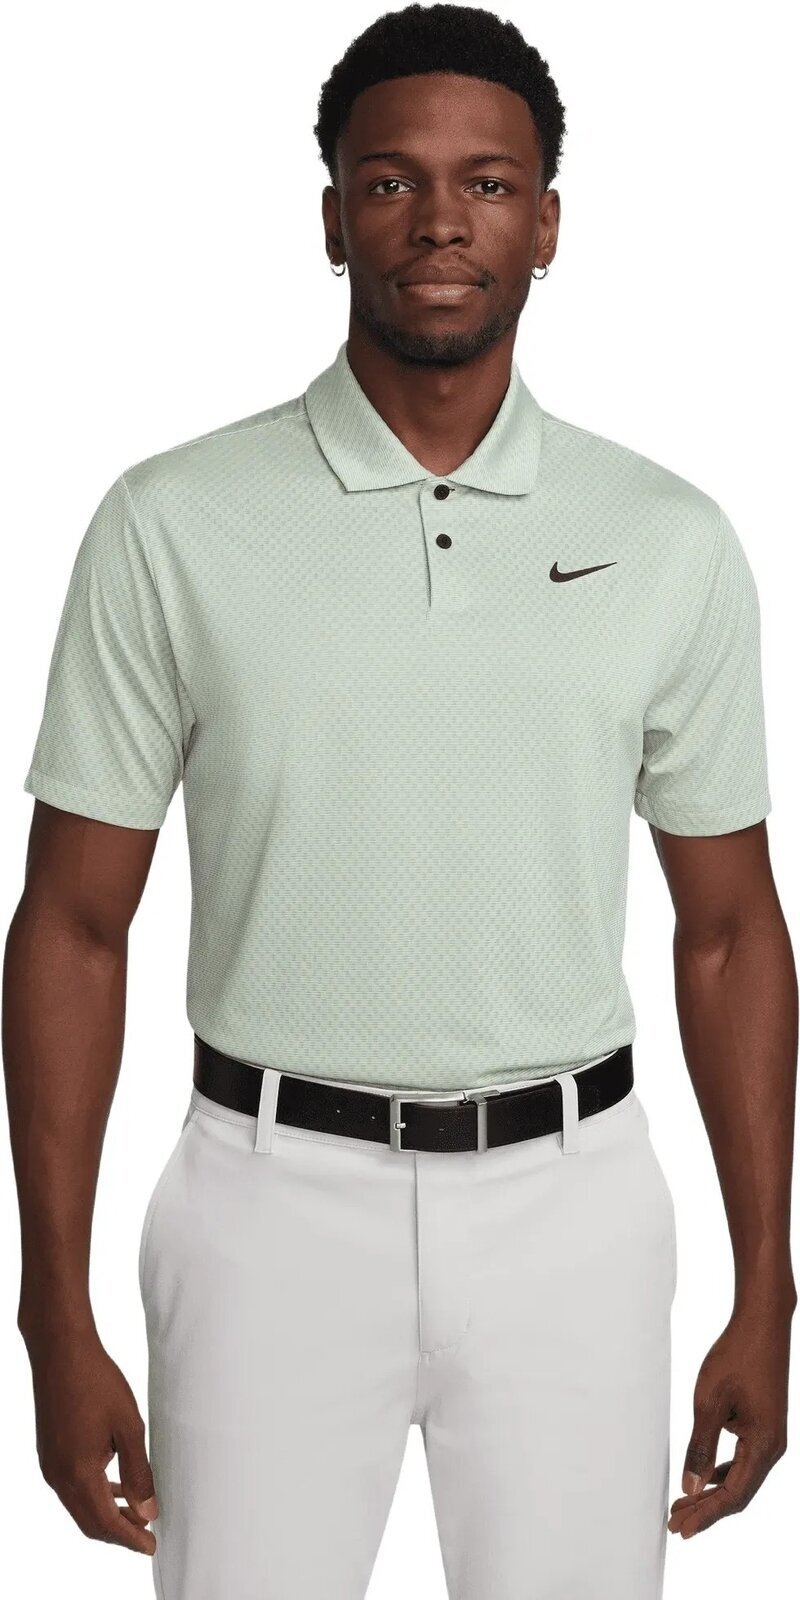 Camiseta polo Nike Dri-Fit Tour Jacquard Mens Polo Honeydew/Sea Glass/Oil Green/Black L Camiseta polo